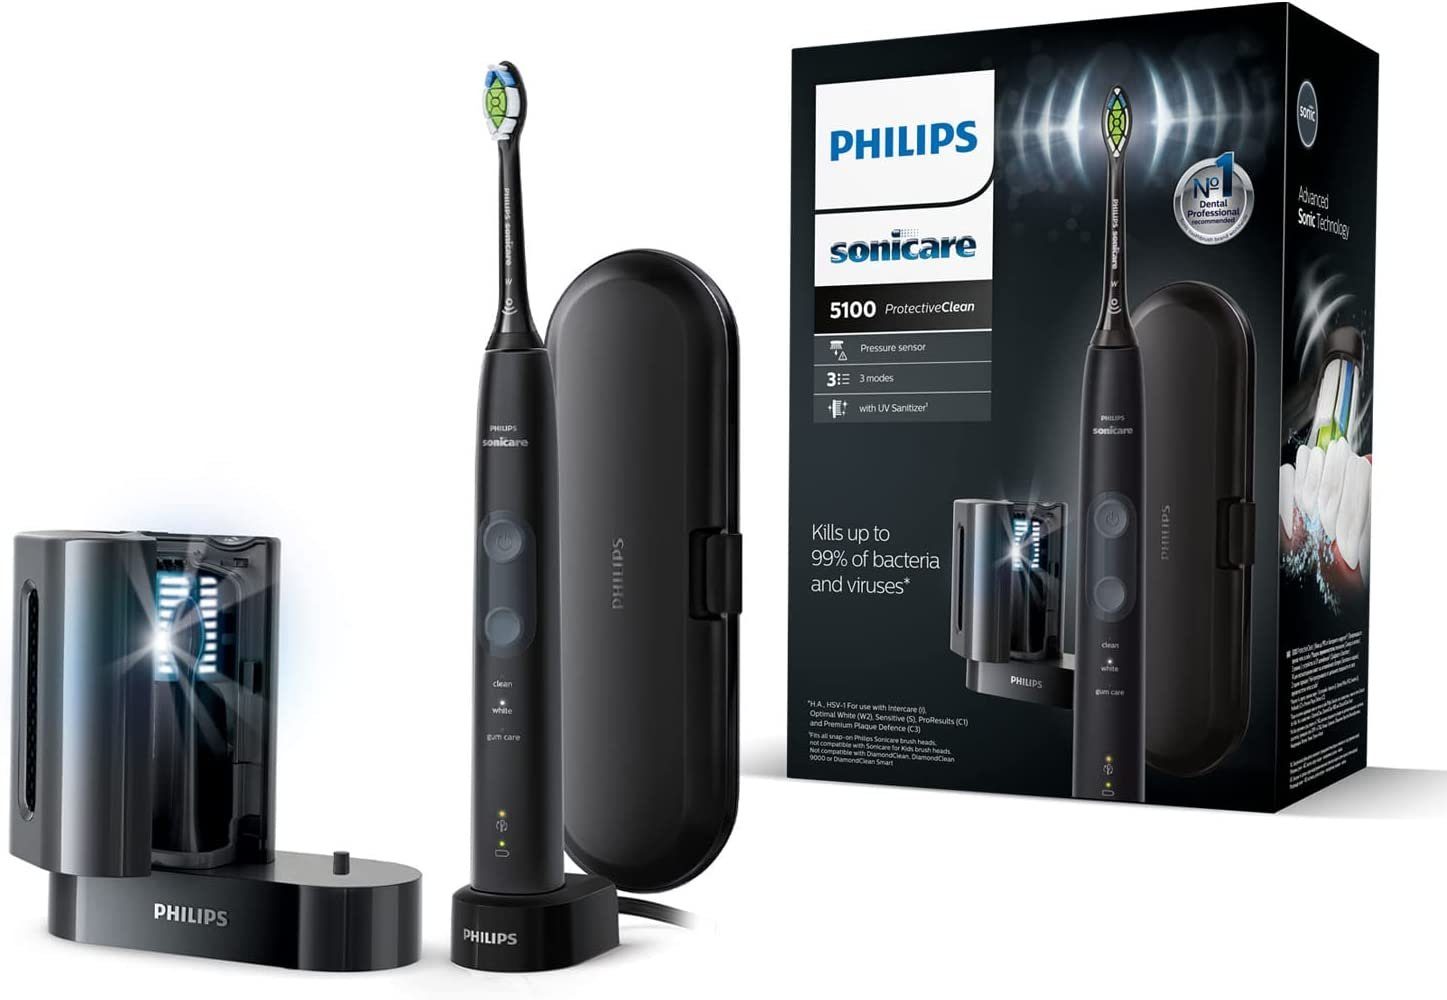 Philips Sonicare Elektrische Zahnbürste HX6850/57 ProtectiveClean 5100,  Schallzahnbürste